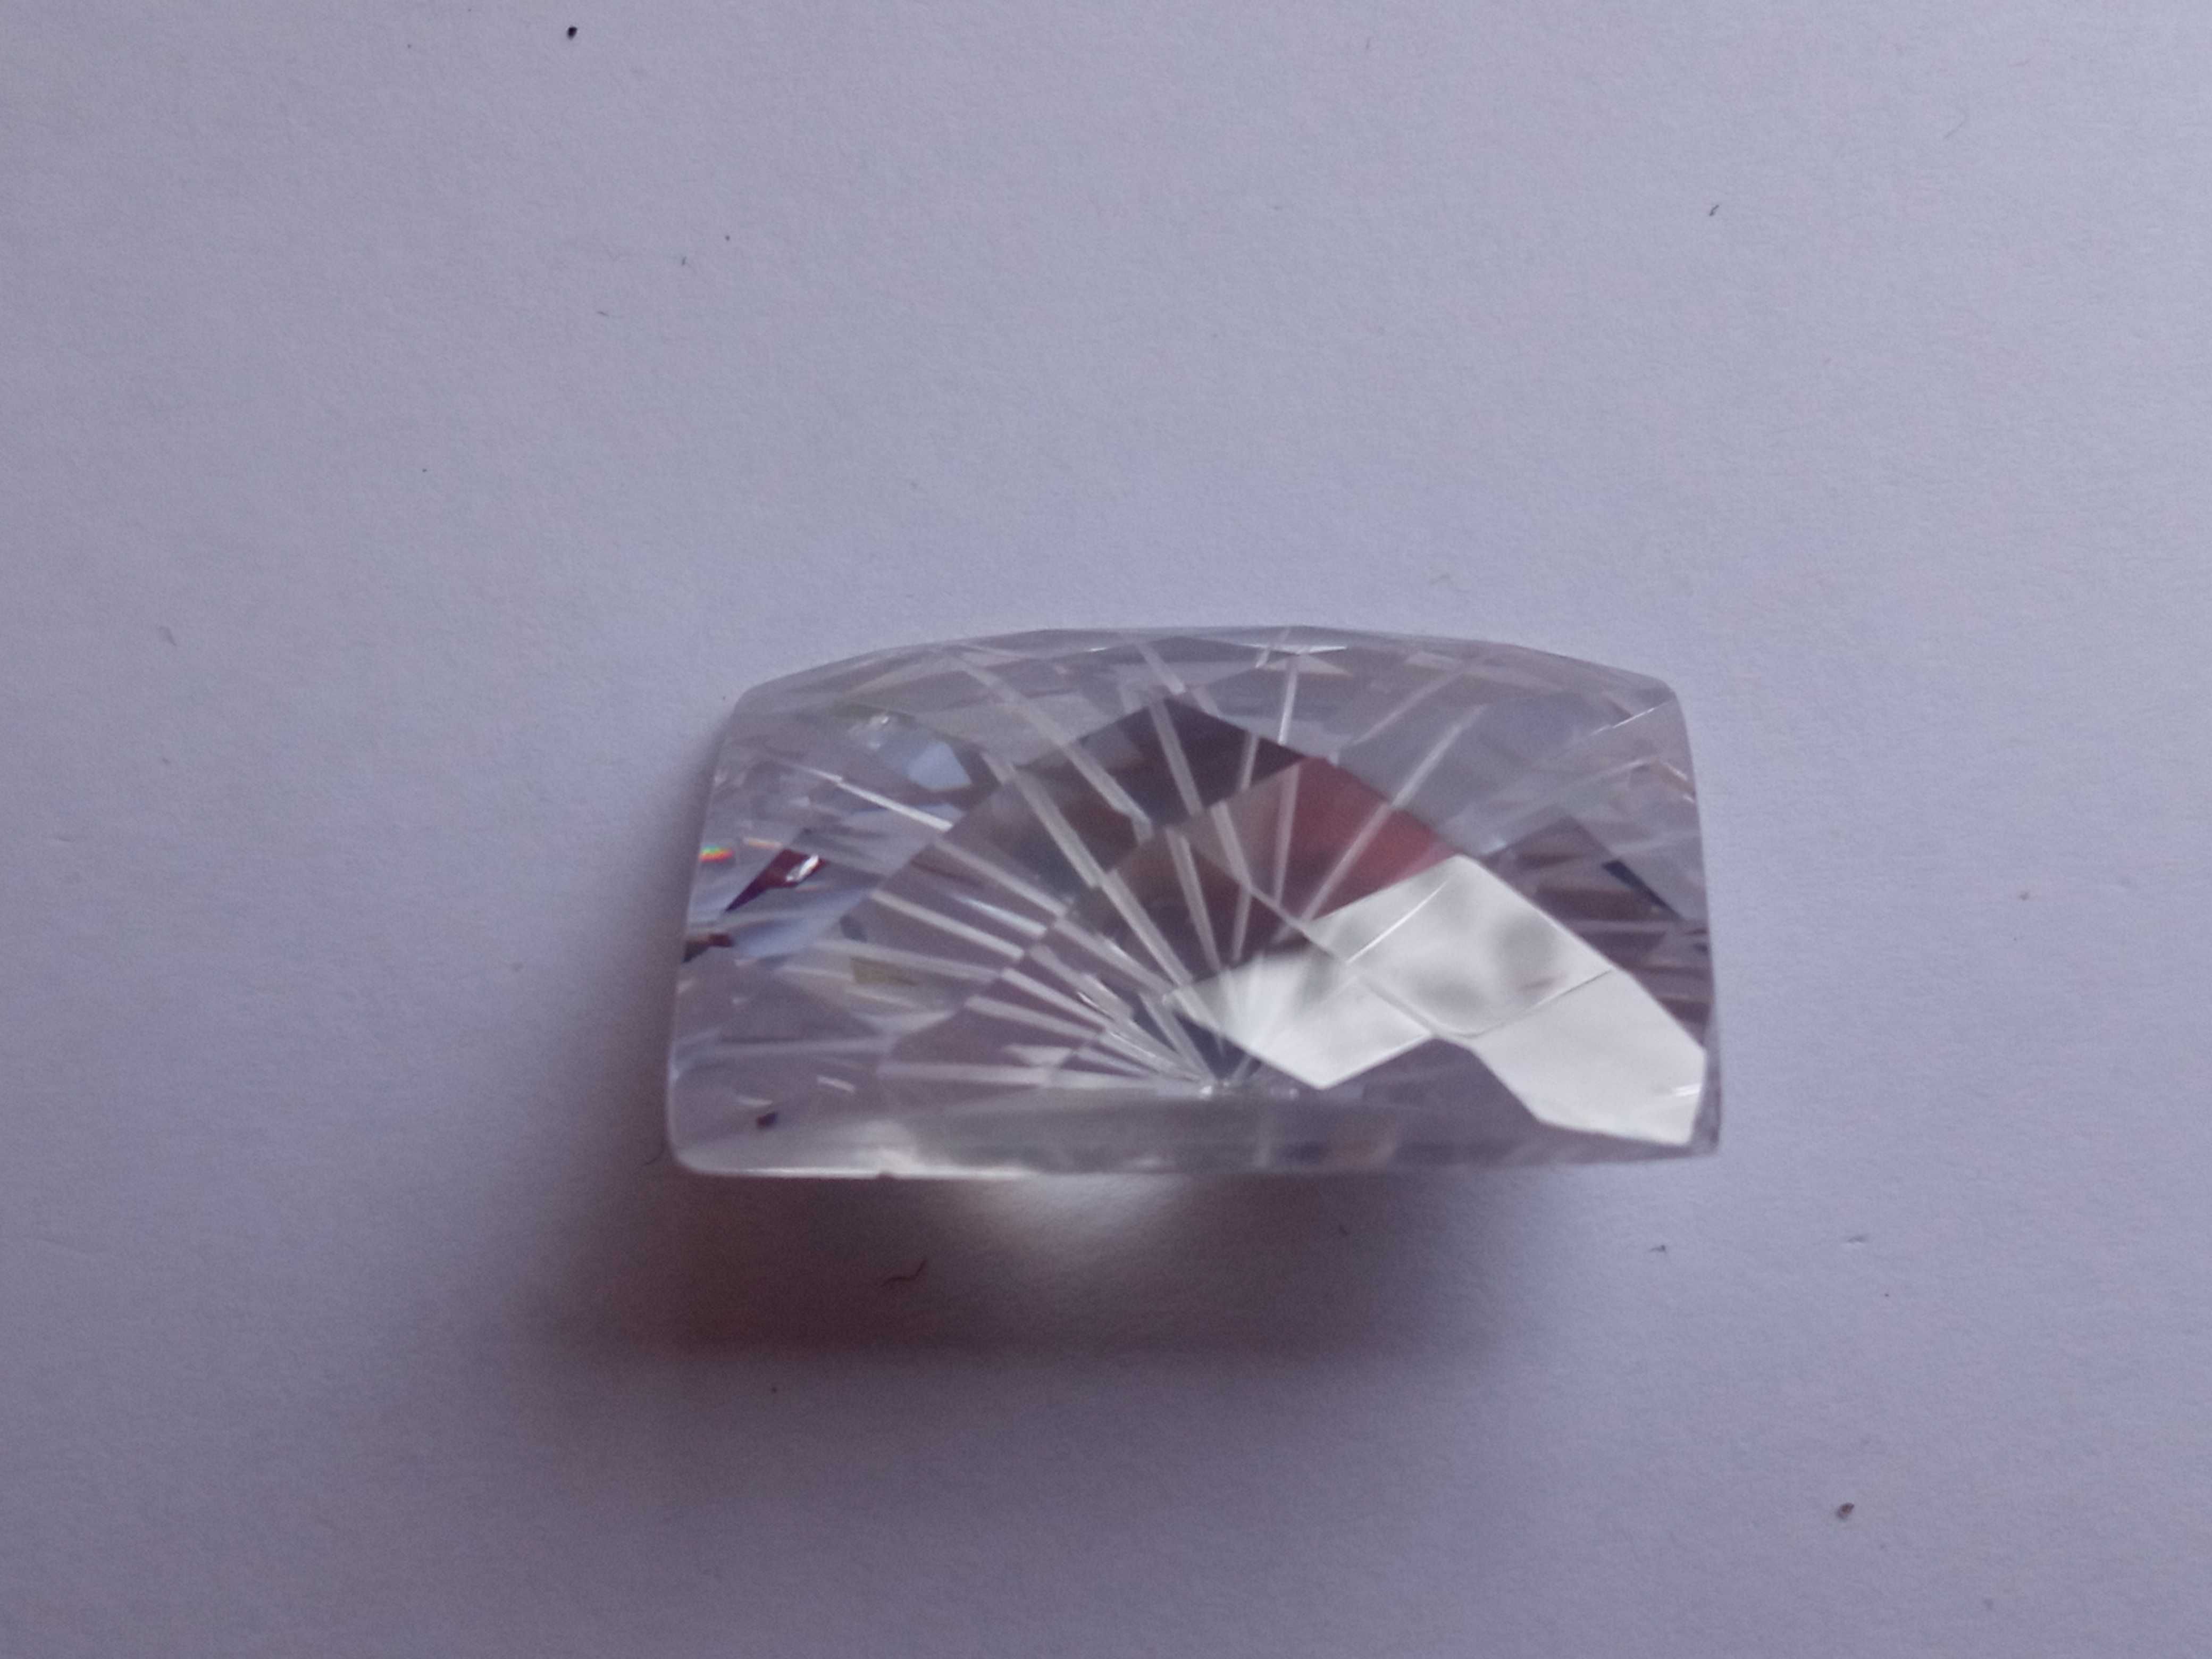 Szklany Kamień fasetowany przezroczysty biały 2,5 x 1,6 cm Prostokątny